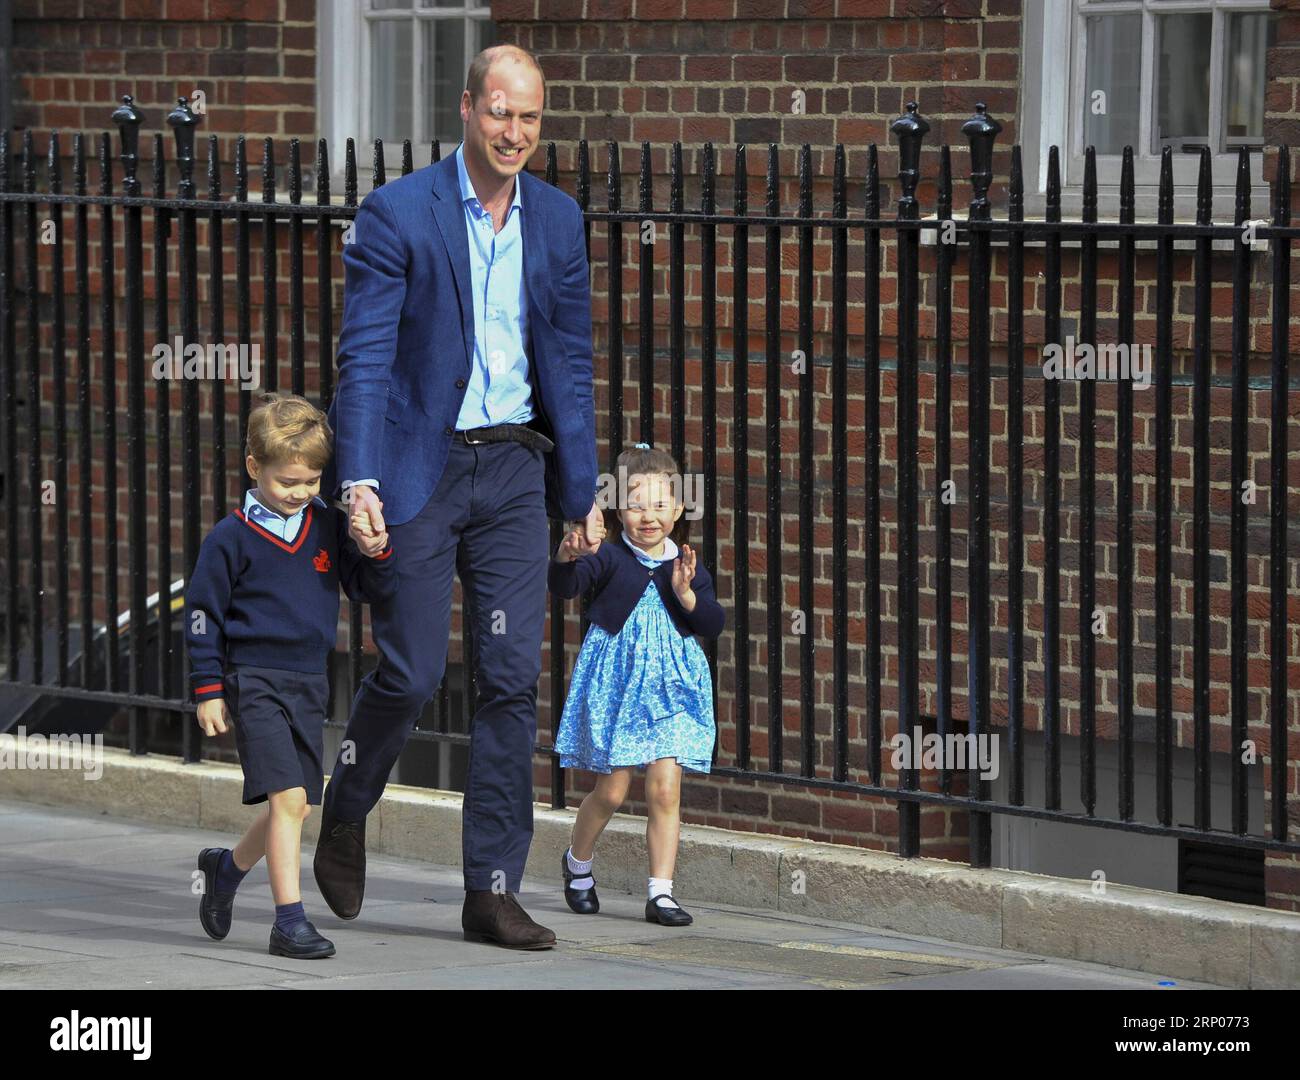 (180424) -- LONDRA, 24 aprile 2018 -- il principe William (C), duca di Cambridge arriva con il principe George (L) e la principessa Charlotte a visitare la Gran Bretagna S Catherine, duchessa di Cambridge, che ha dato alla luce un bambino al St Mary S Hospital di Londra, in Gran Bretagna, il 23 aprile 2018. La principessa Kate lunedì ha dato alla luce un ragazzo, il suo terzo figlio, che è il quinto in linea di successione al trono britannico. BRITAIN-LONDON-ROYAL BABY StephenxChung PUBLICATIONxNOTxINxCHN Foto Stock